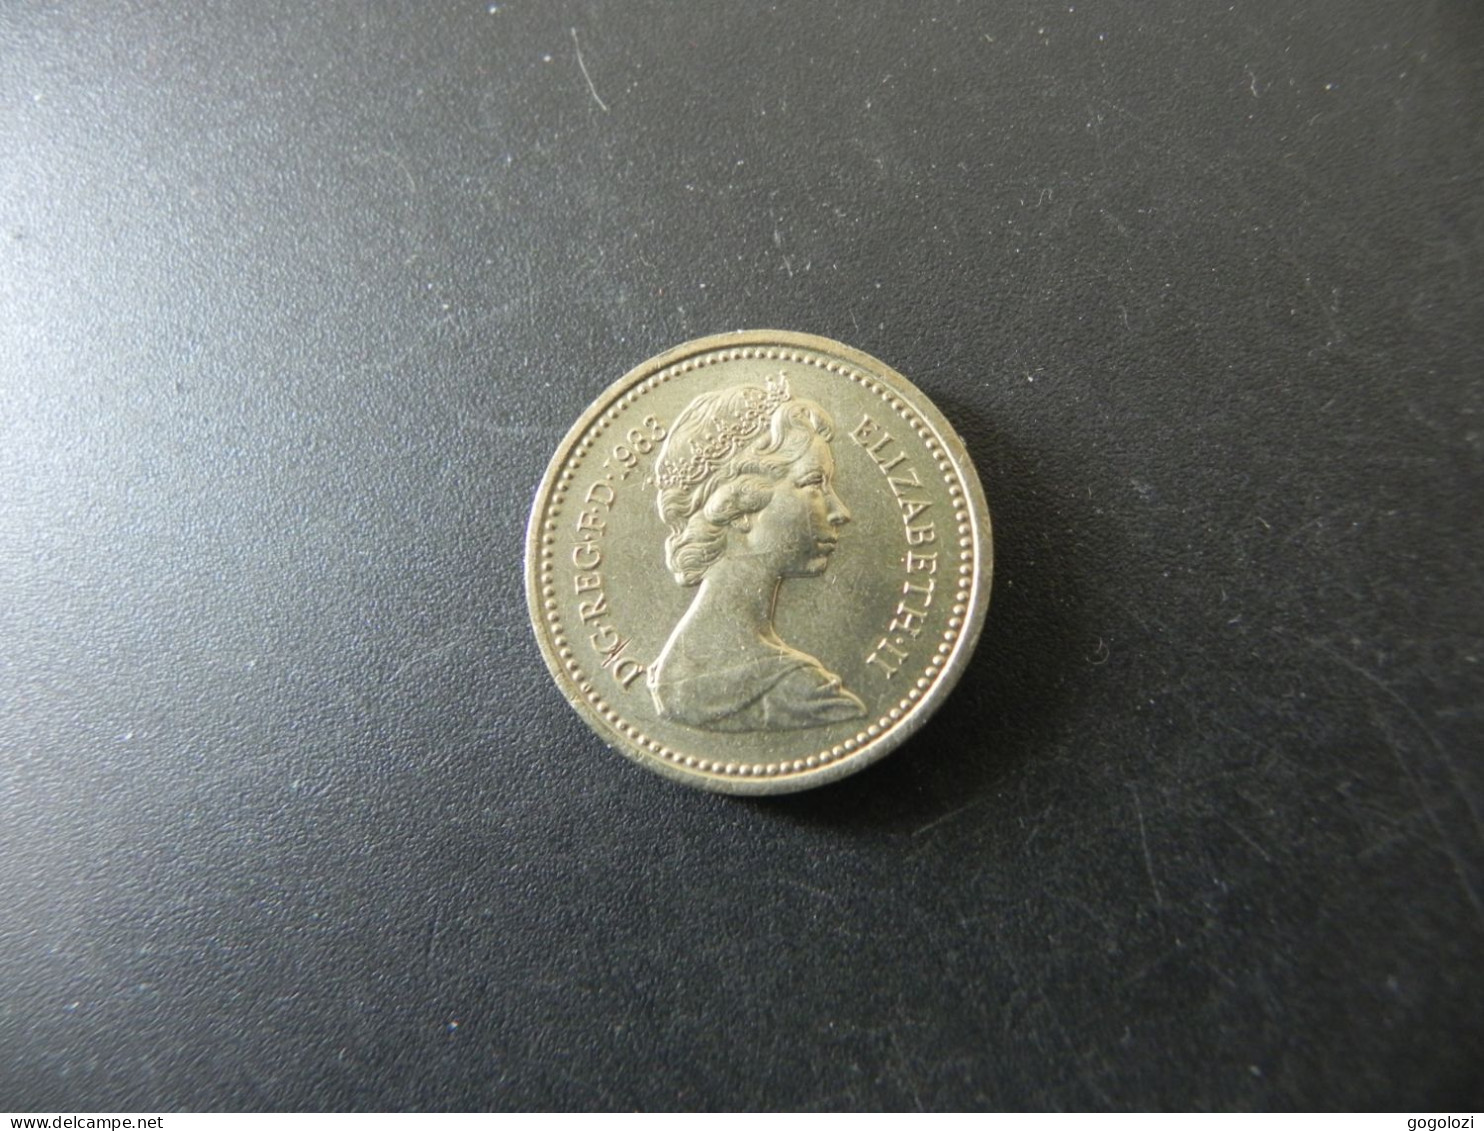 Great Britain 1 Pound 1983 - 1 Pound